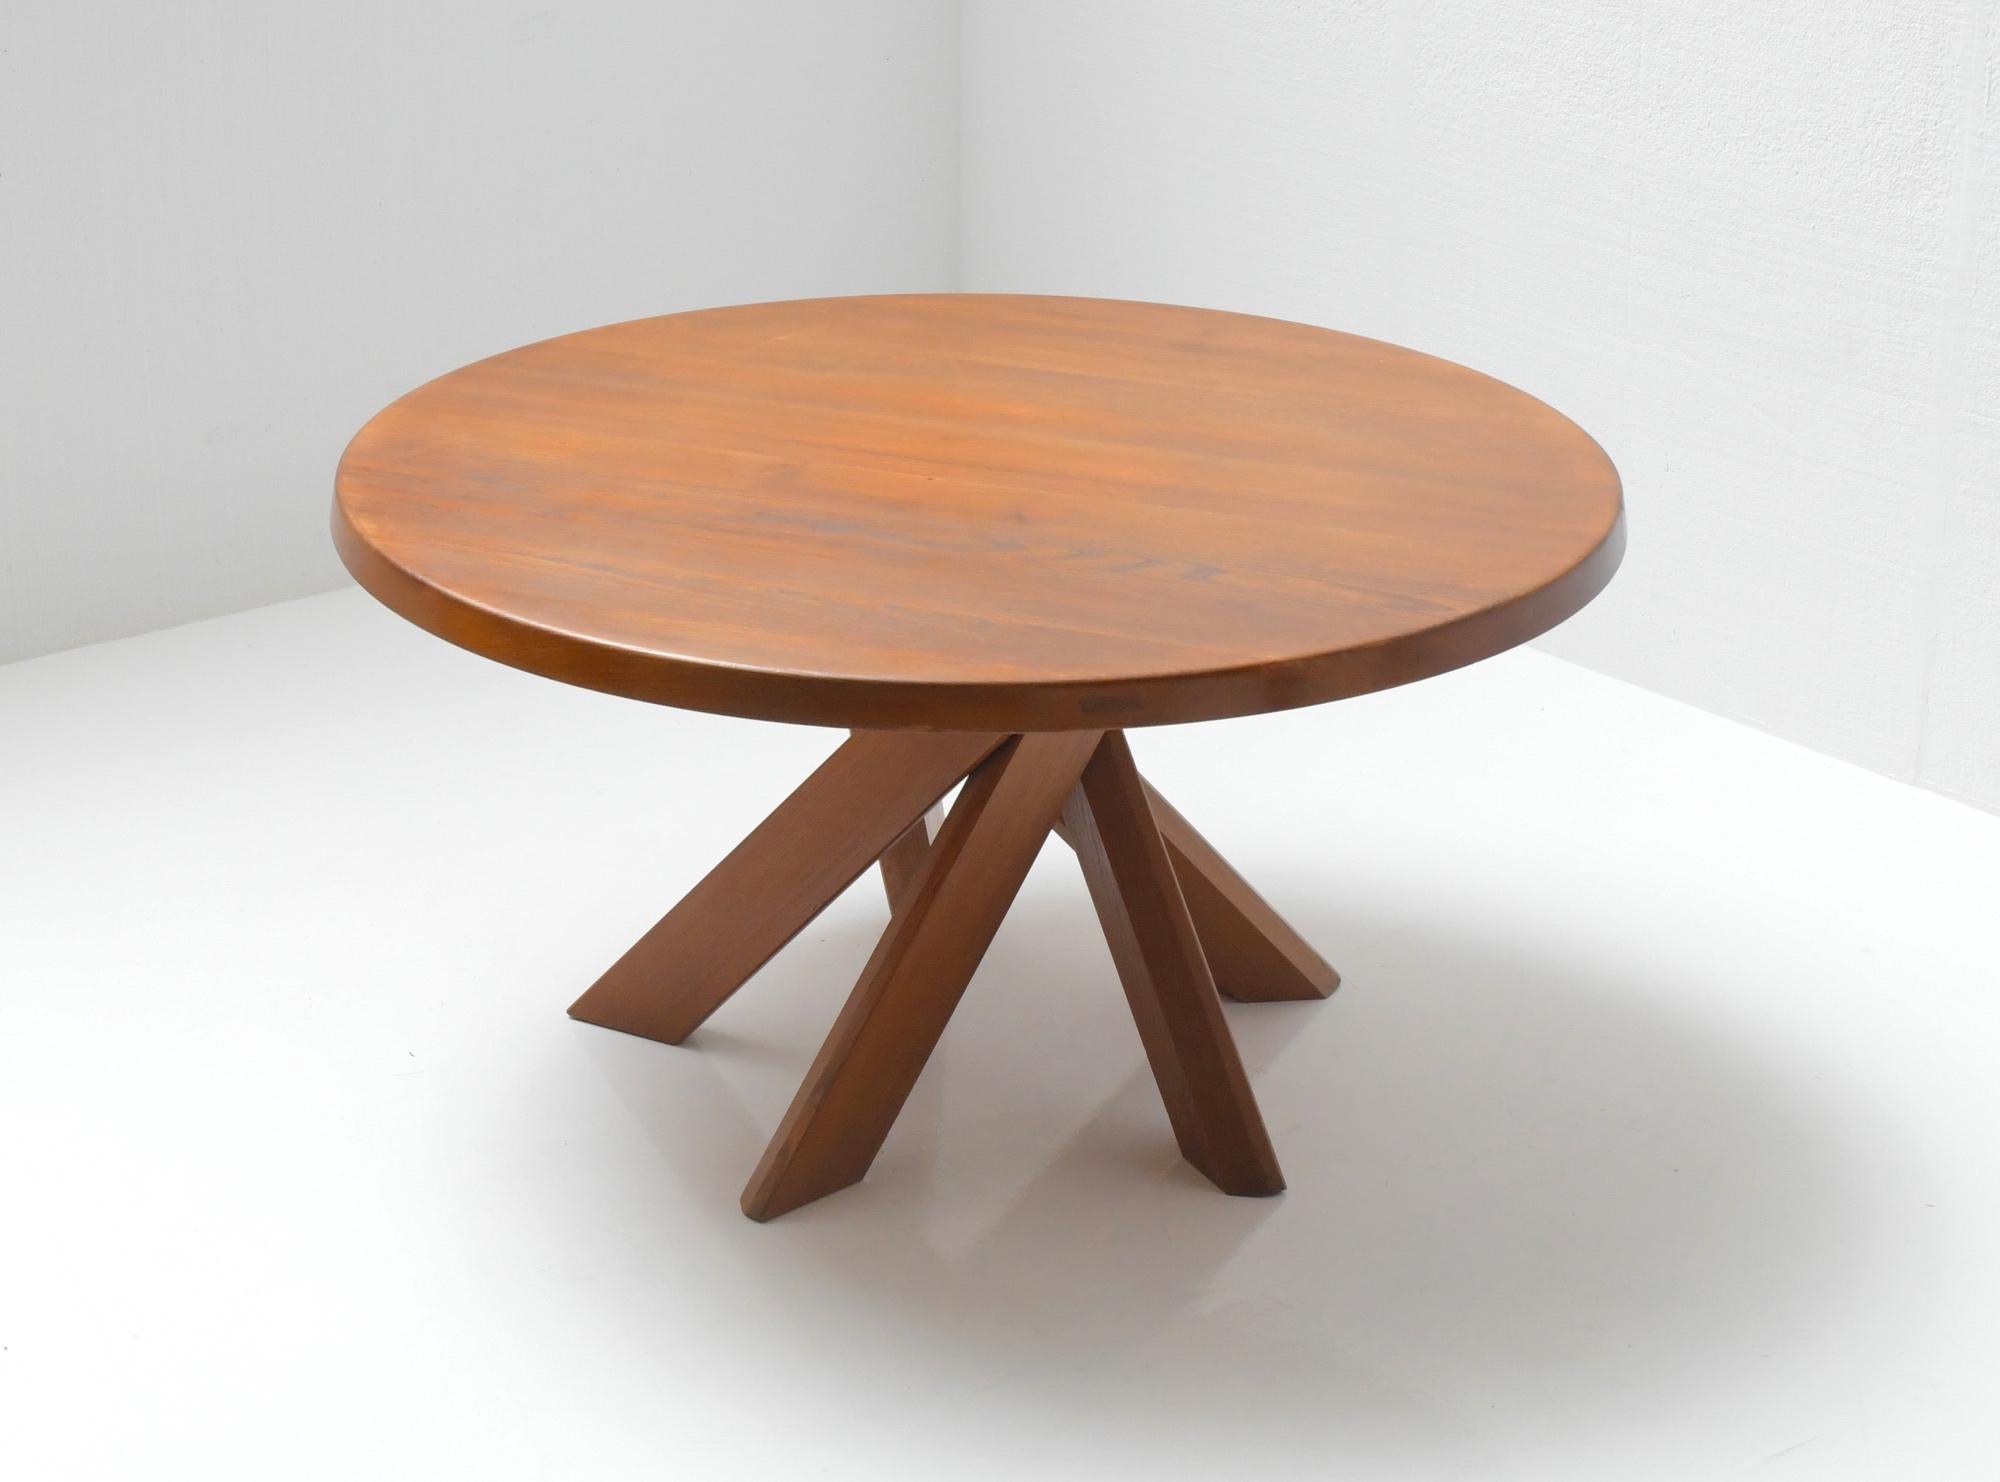 Incroyable et rare table Pierre Chapo de son premier propriétaire en ELM massif.
Acheté en 1969. La table est estampillée 69.
Encore 100% d'origine. 

Le bois n'a jamais été poncé ni restauré.
La patine et la couleur sont étonnantes.

Très